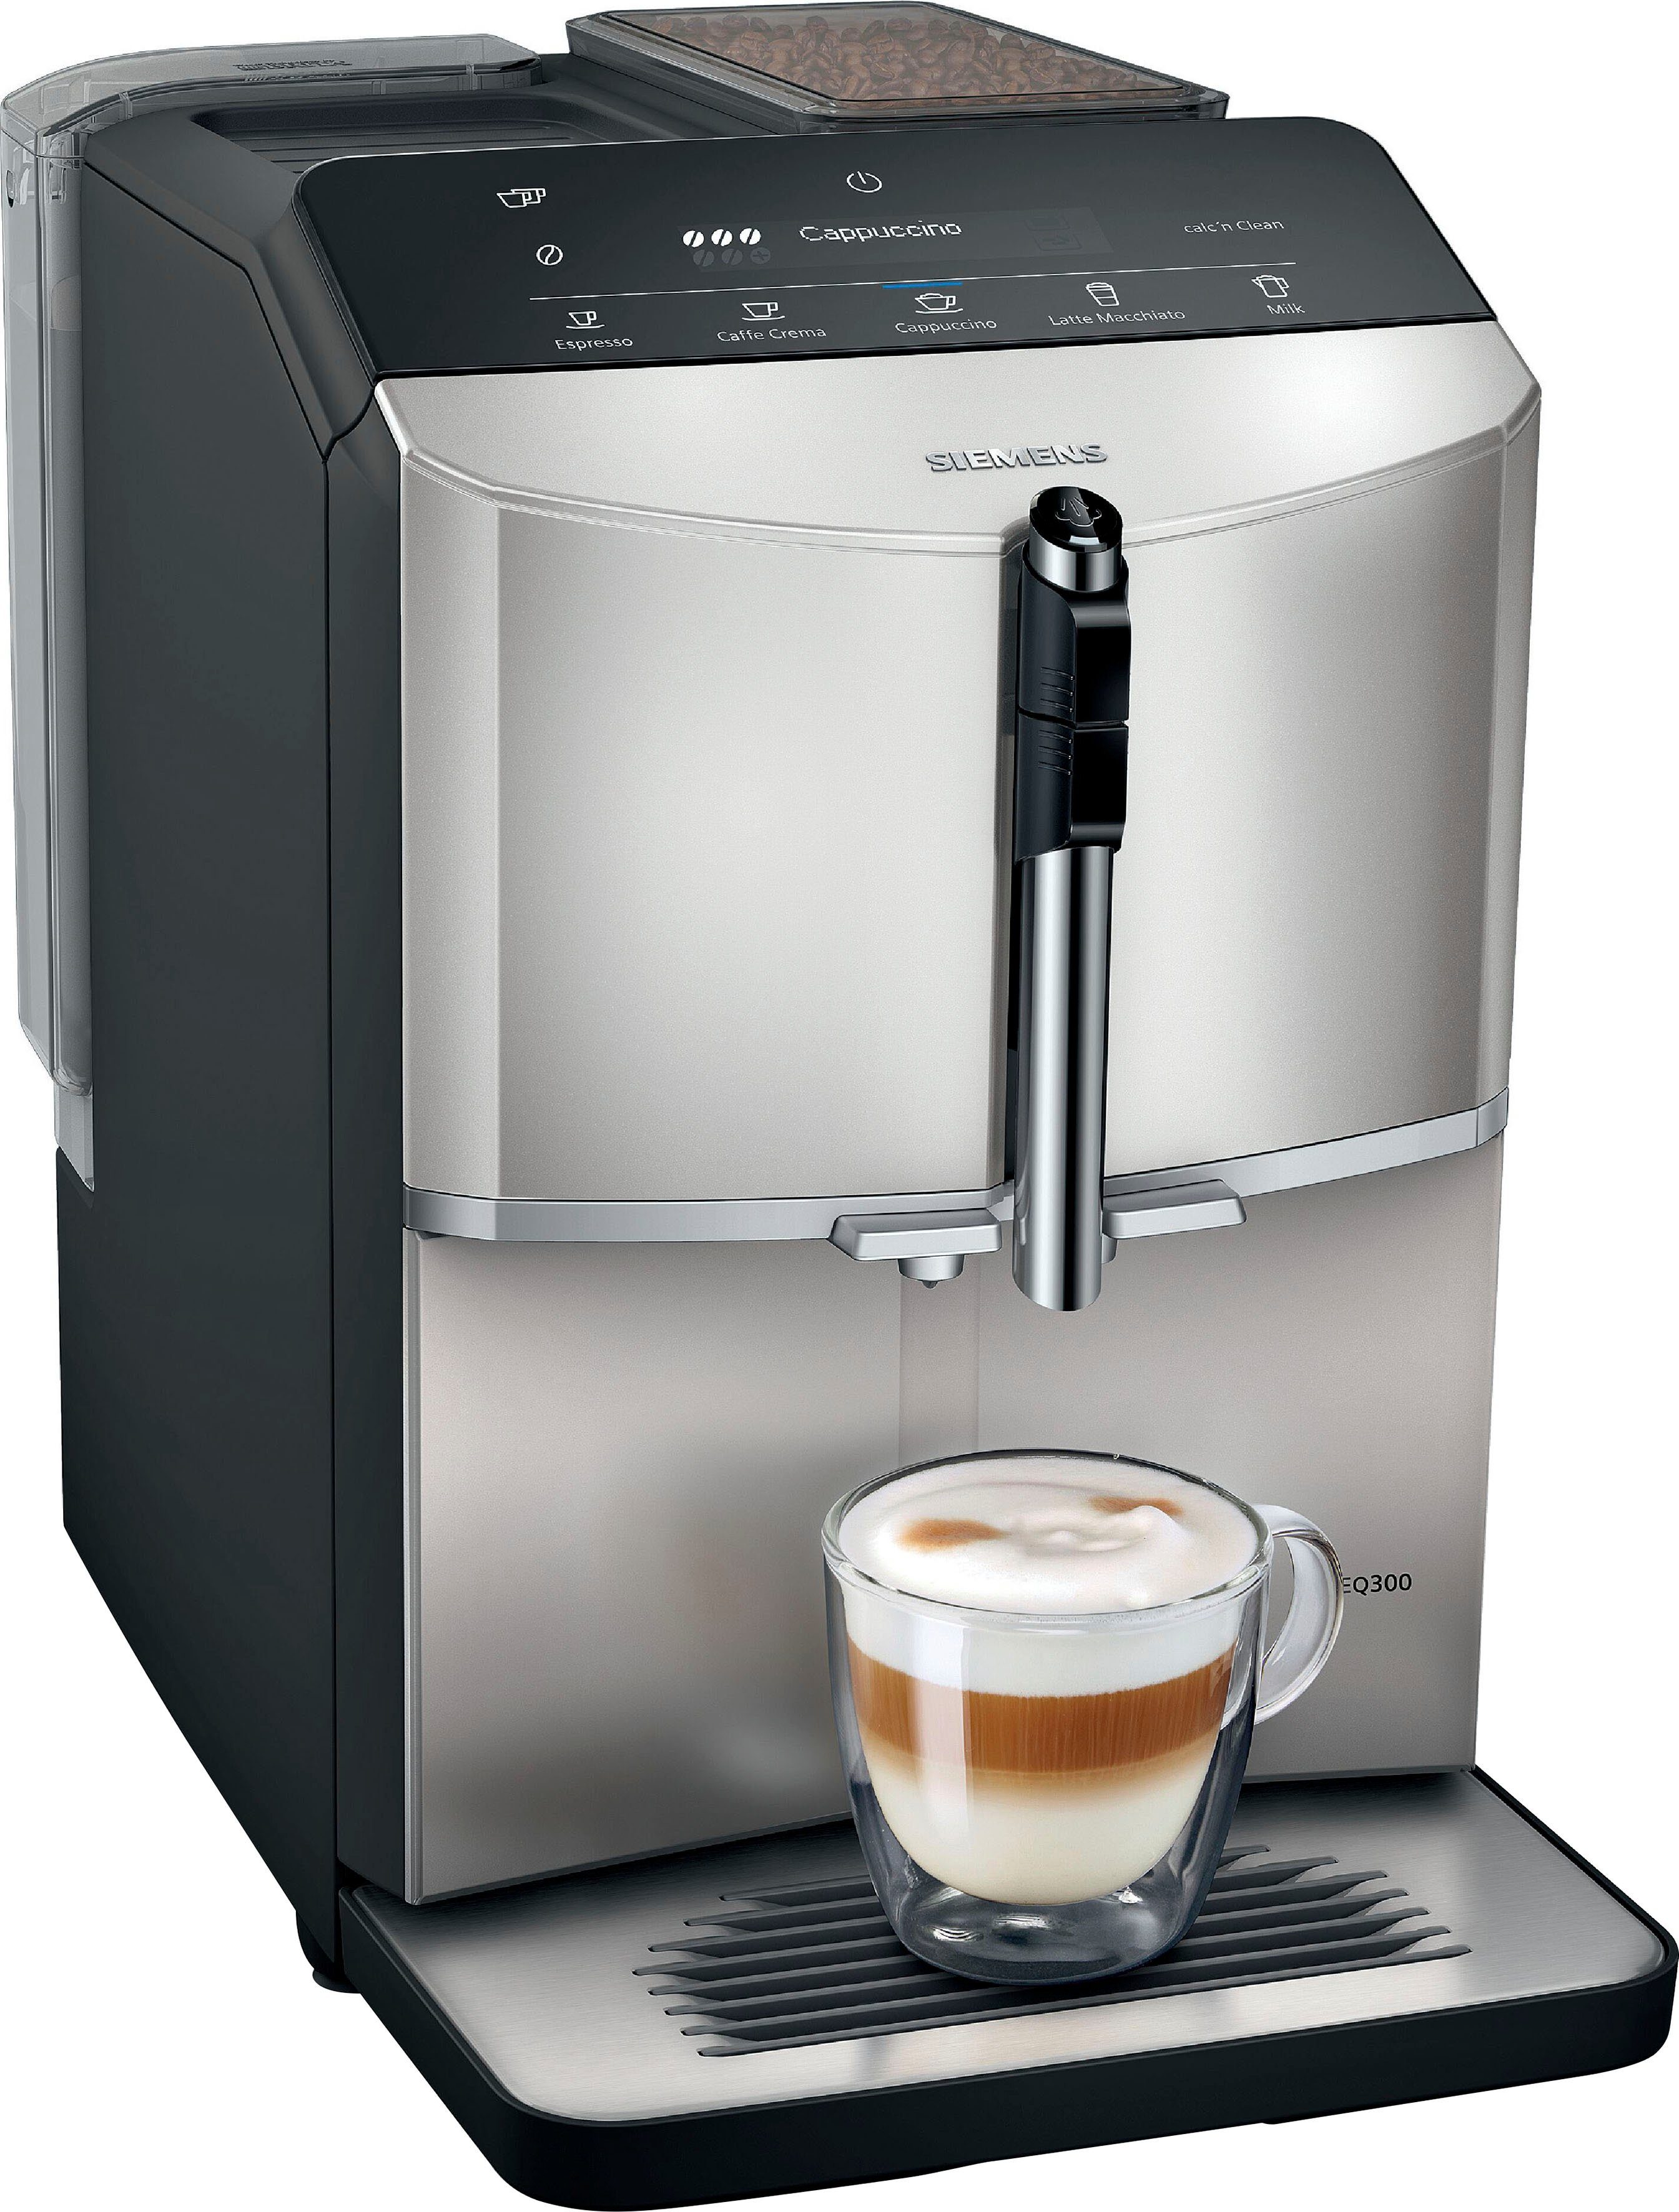 silver metallic Kaffeevollautomat TF303E07, Inox SIEMENS